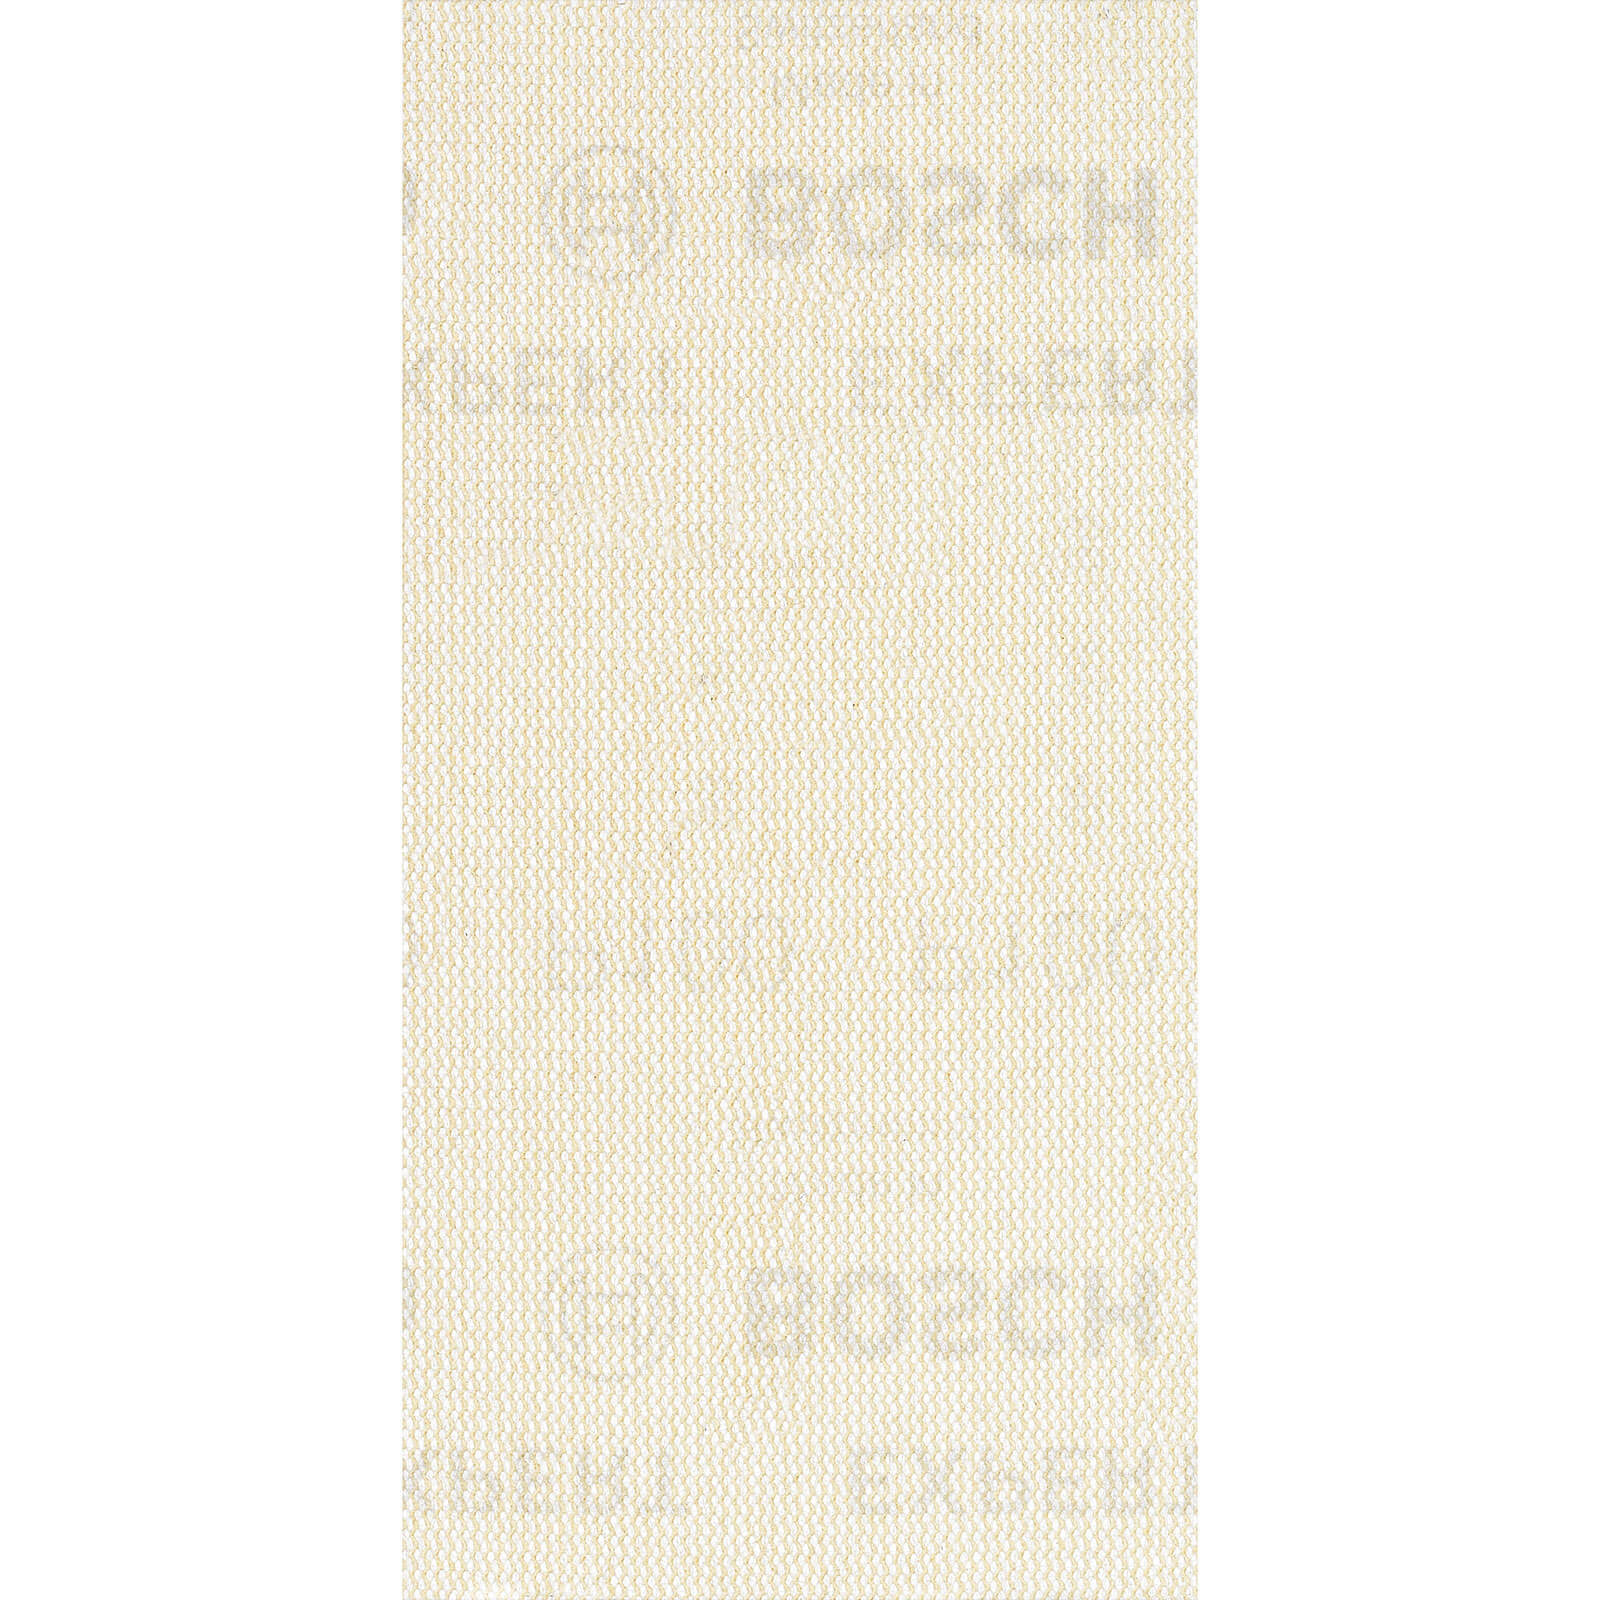 Bosch Expert M480 93mm x 186mm Net Abrasive Sanding Sheets 93mm x 186mm 100g Pack of 10